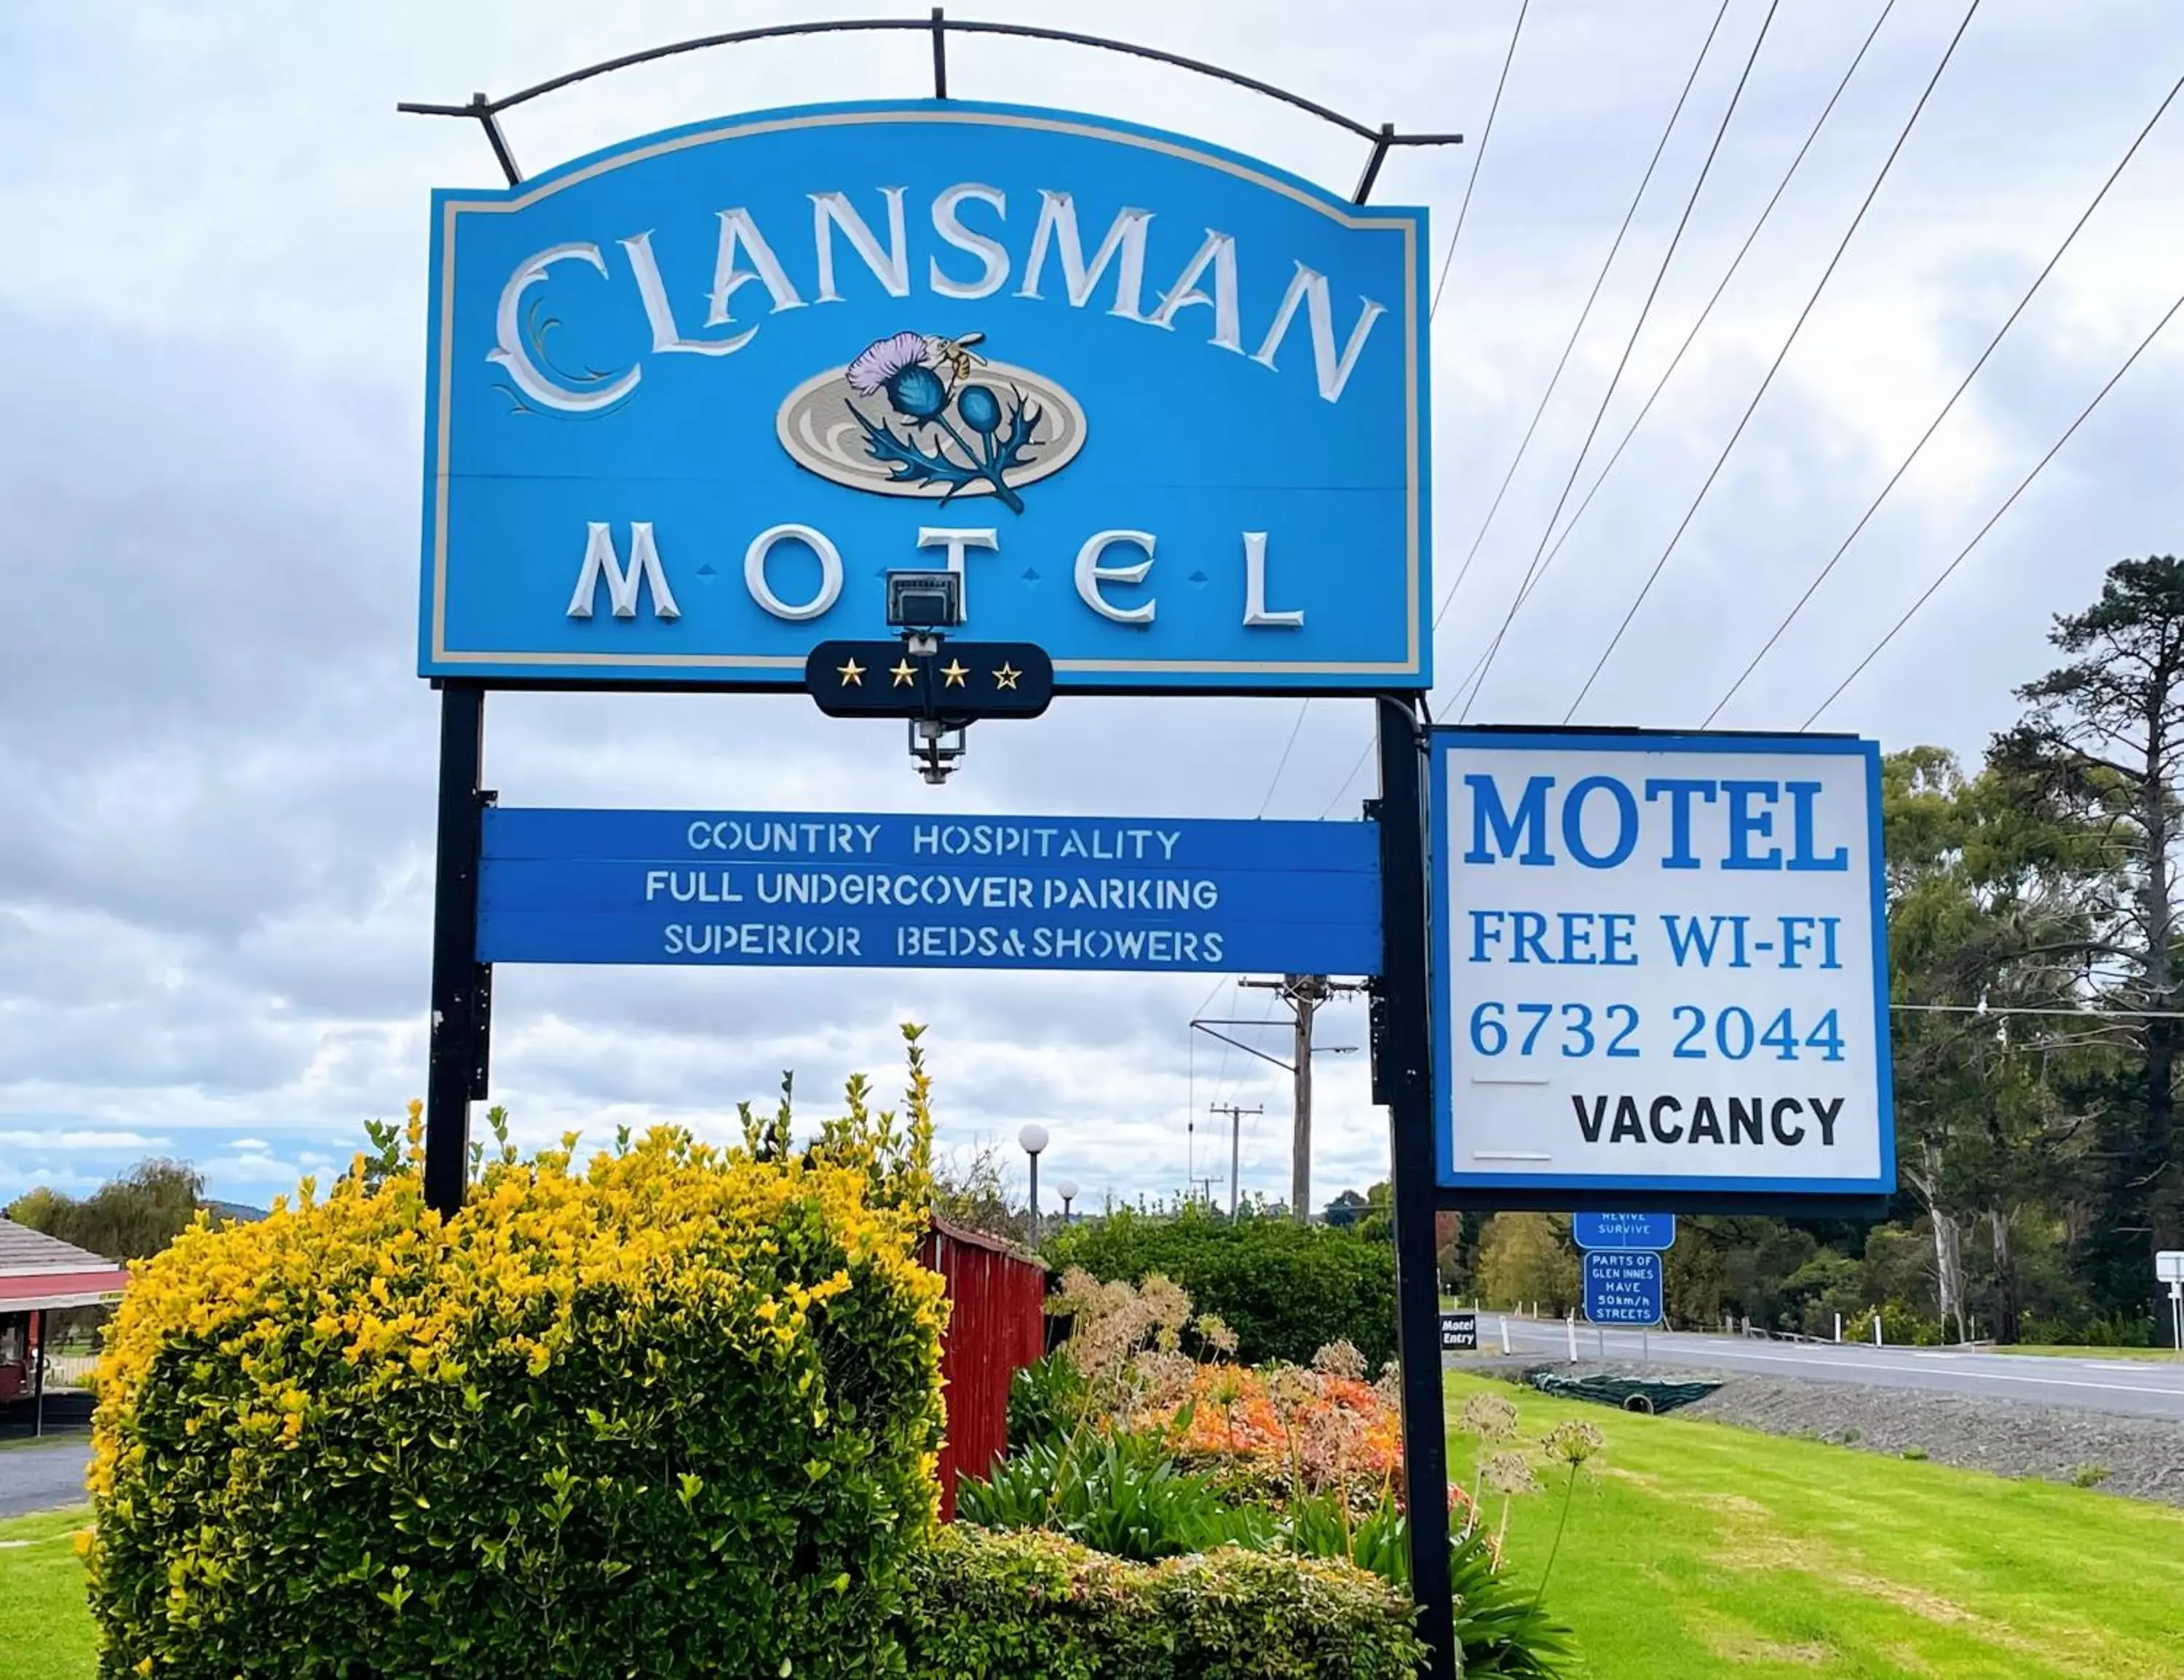 Property logo or sign, Property Logo/Sign in Clansman Motel